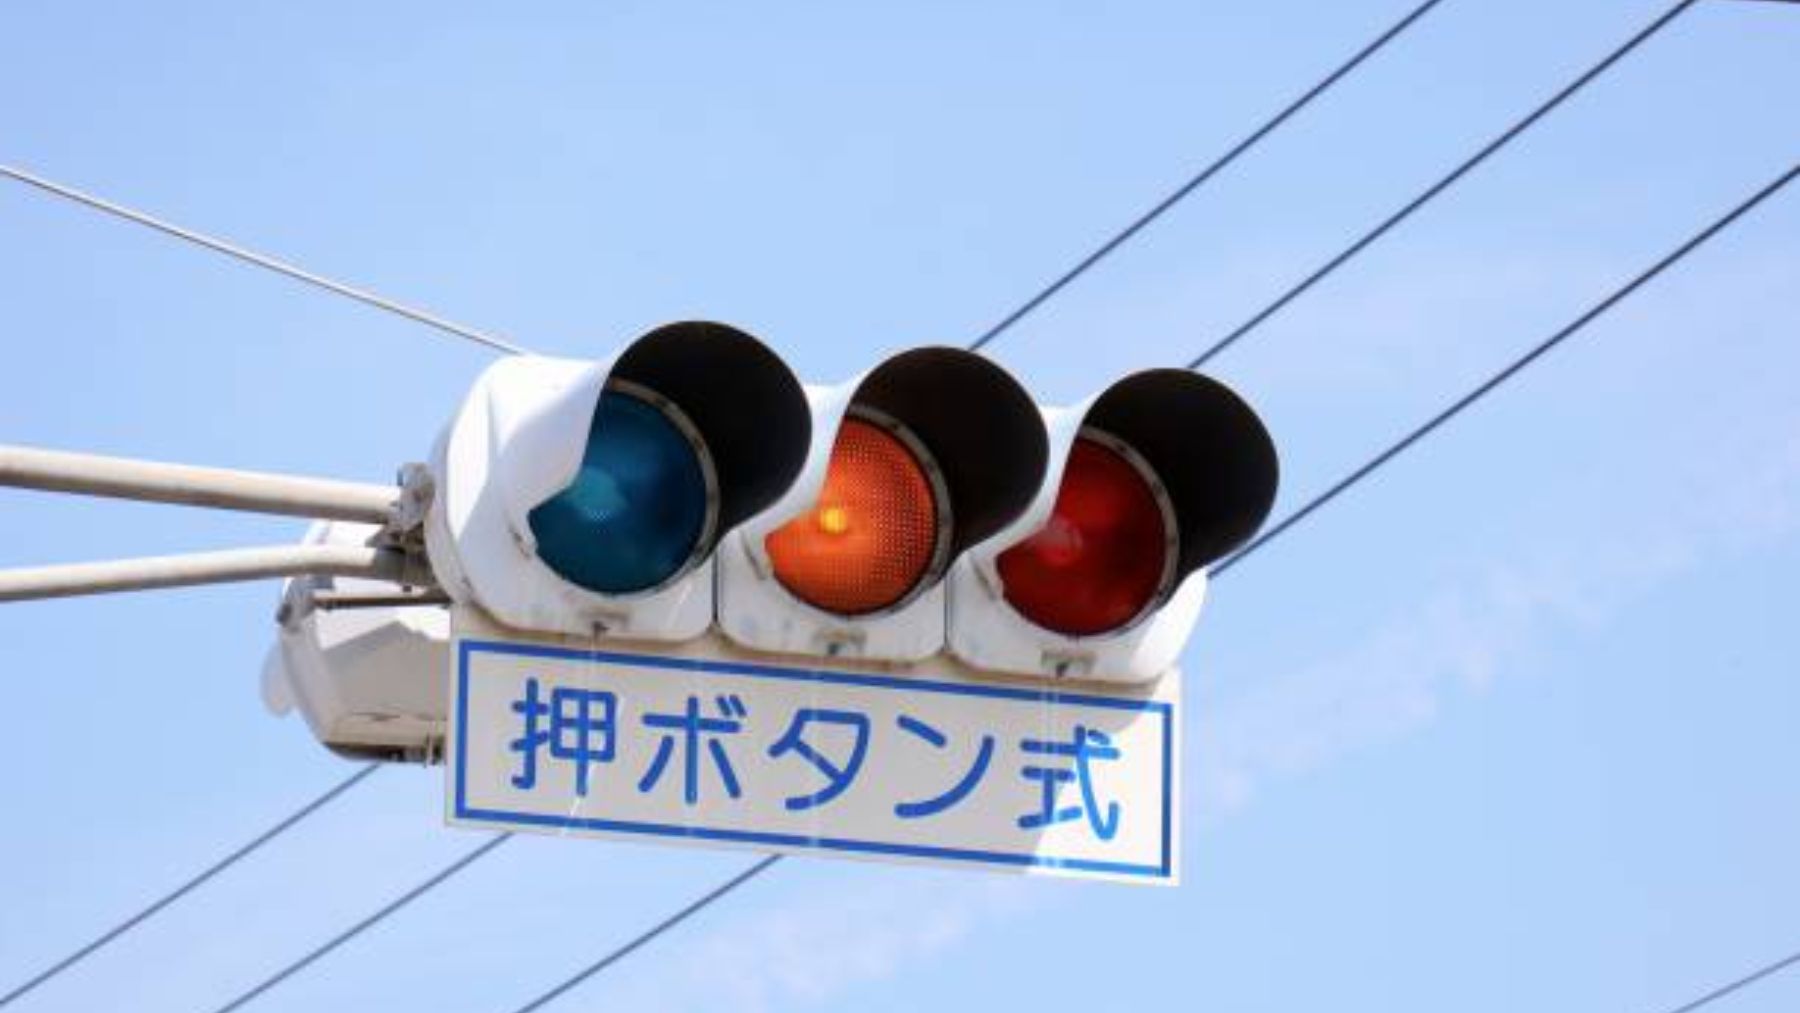 ¿Por qué los semáforos en Japón tienen luces azules en lugar de verdes?